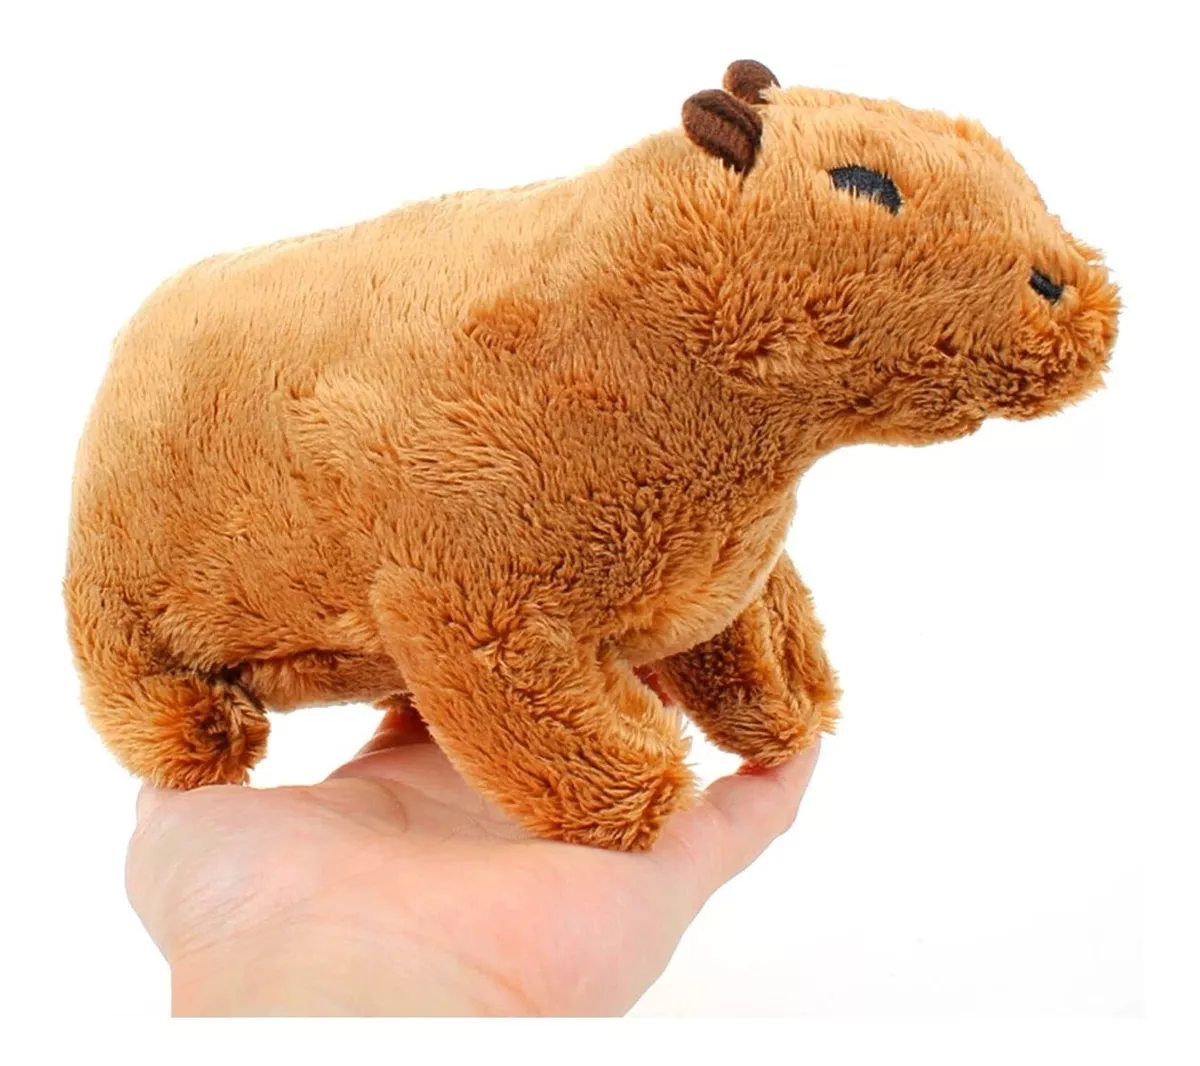 Capybara Peluche Realista 18cm